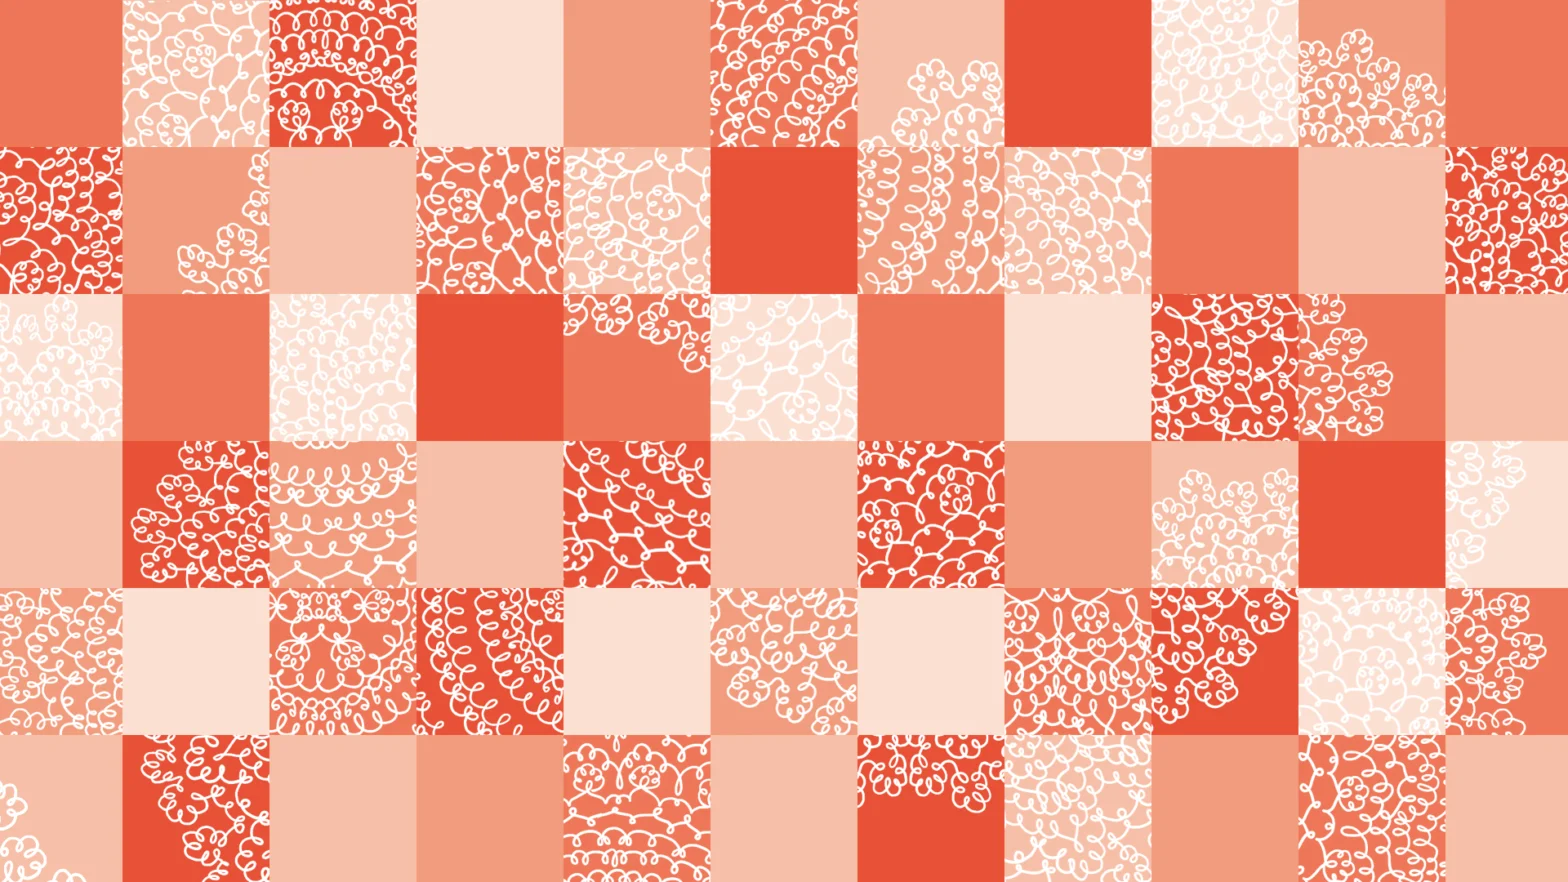 Grafika w małe kwadraty w różnych odcieniach pomarańczy. W